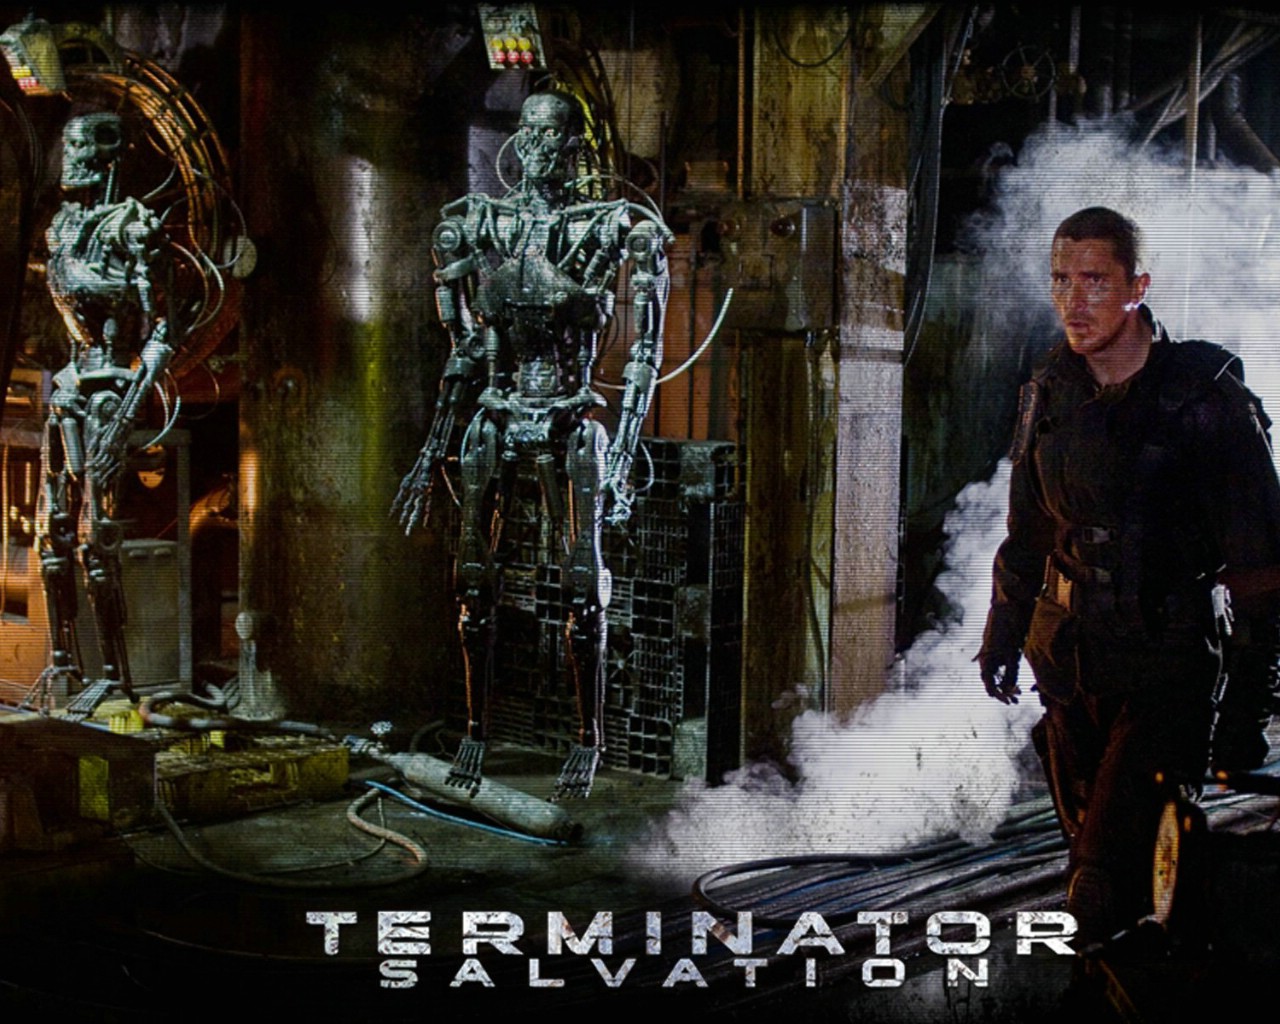 壁纸1280x1024终结者 救世主 Terminator Salvation 电影壁纸 Terminator Salvation 终结者4壁纸 《终结者救世主 Terminator Salvation 》壁纸 《终结者救世主 Terminator Salvation 》图片 《终结者救世主 Terminator Salvation 》素材 影视壁纸 影视图库 影视图片素材桌面壁纸